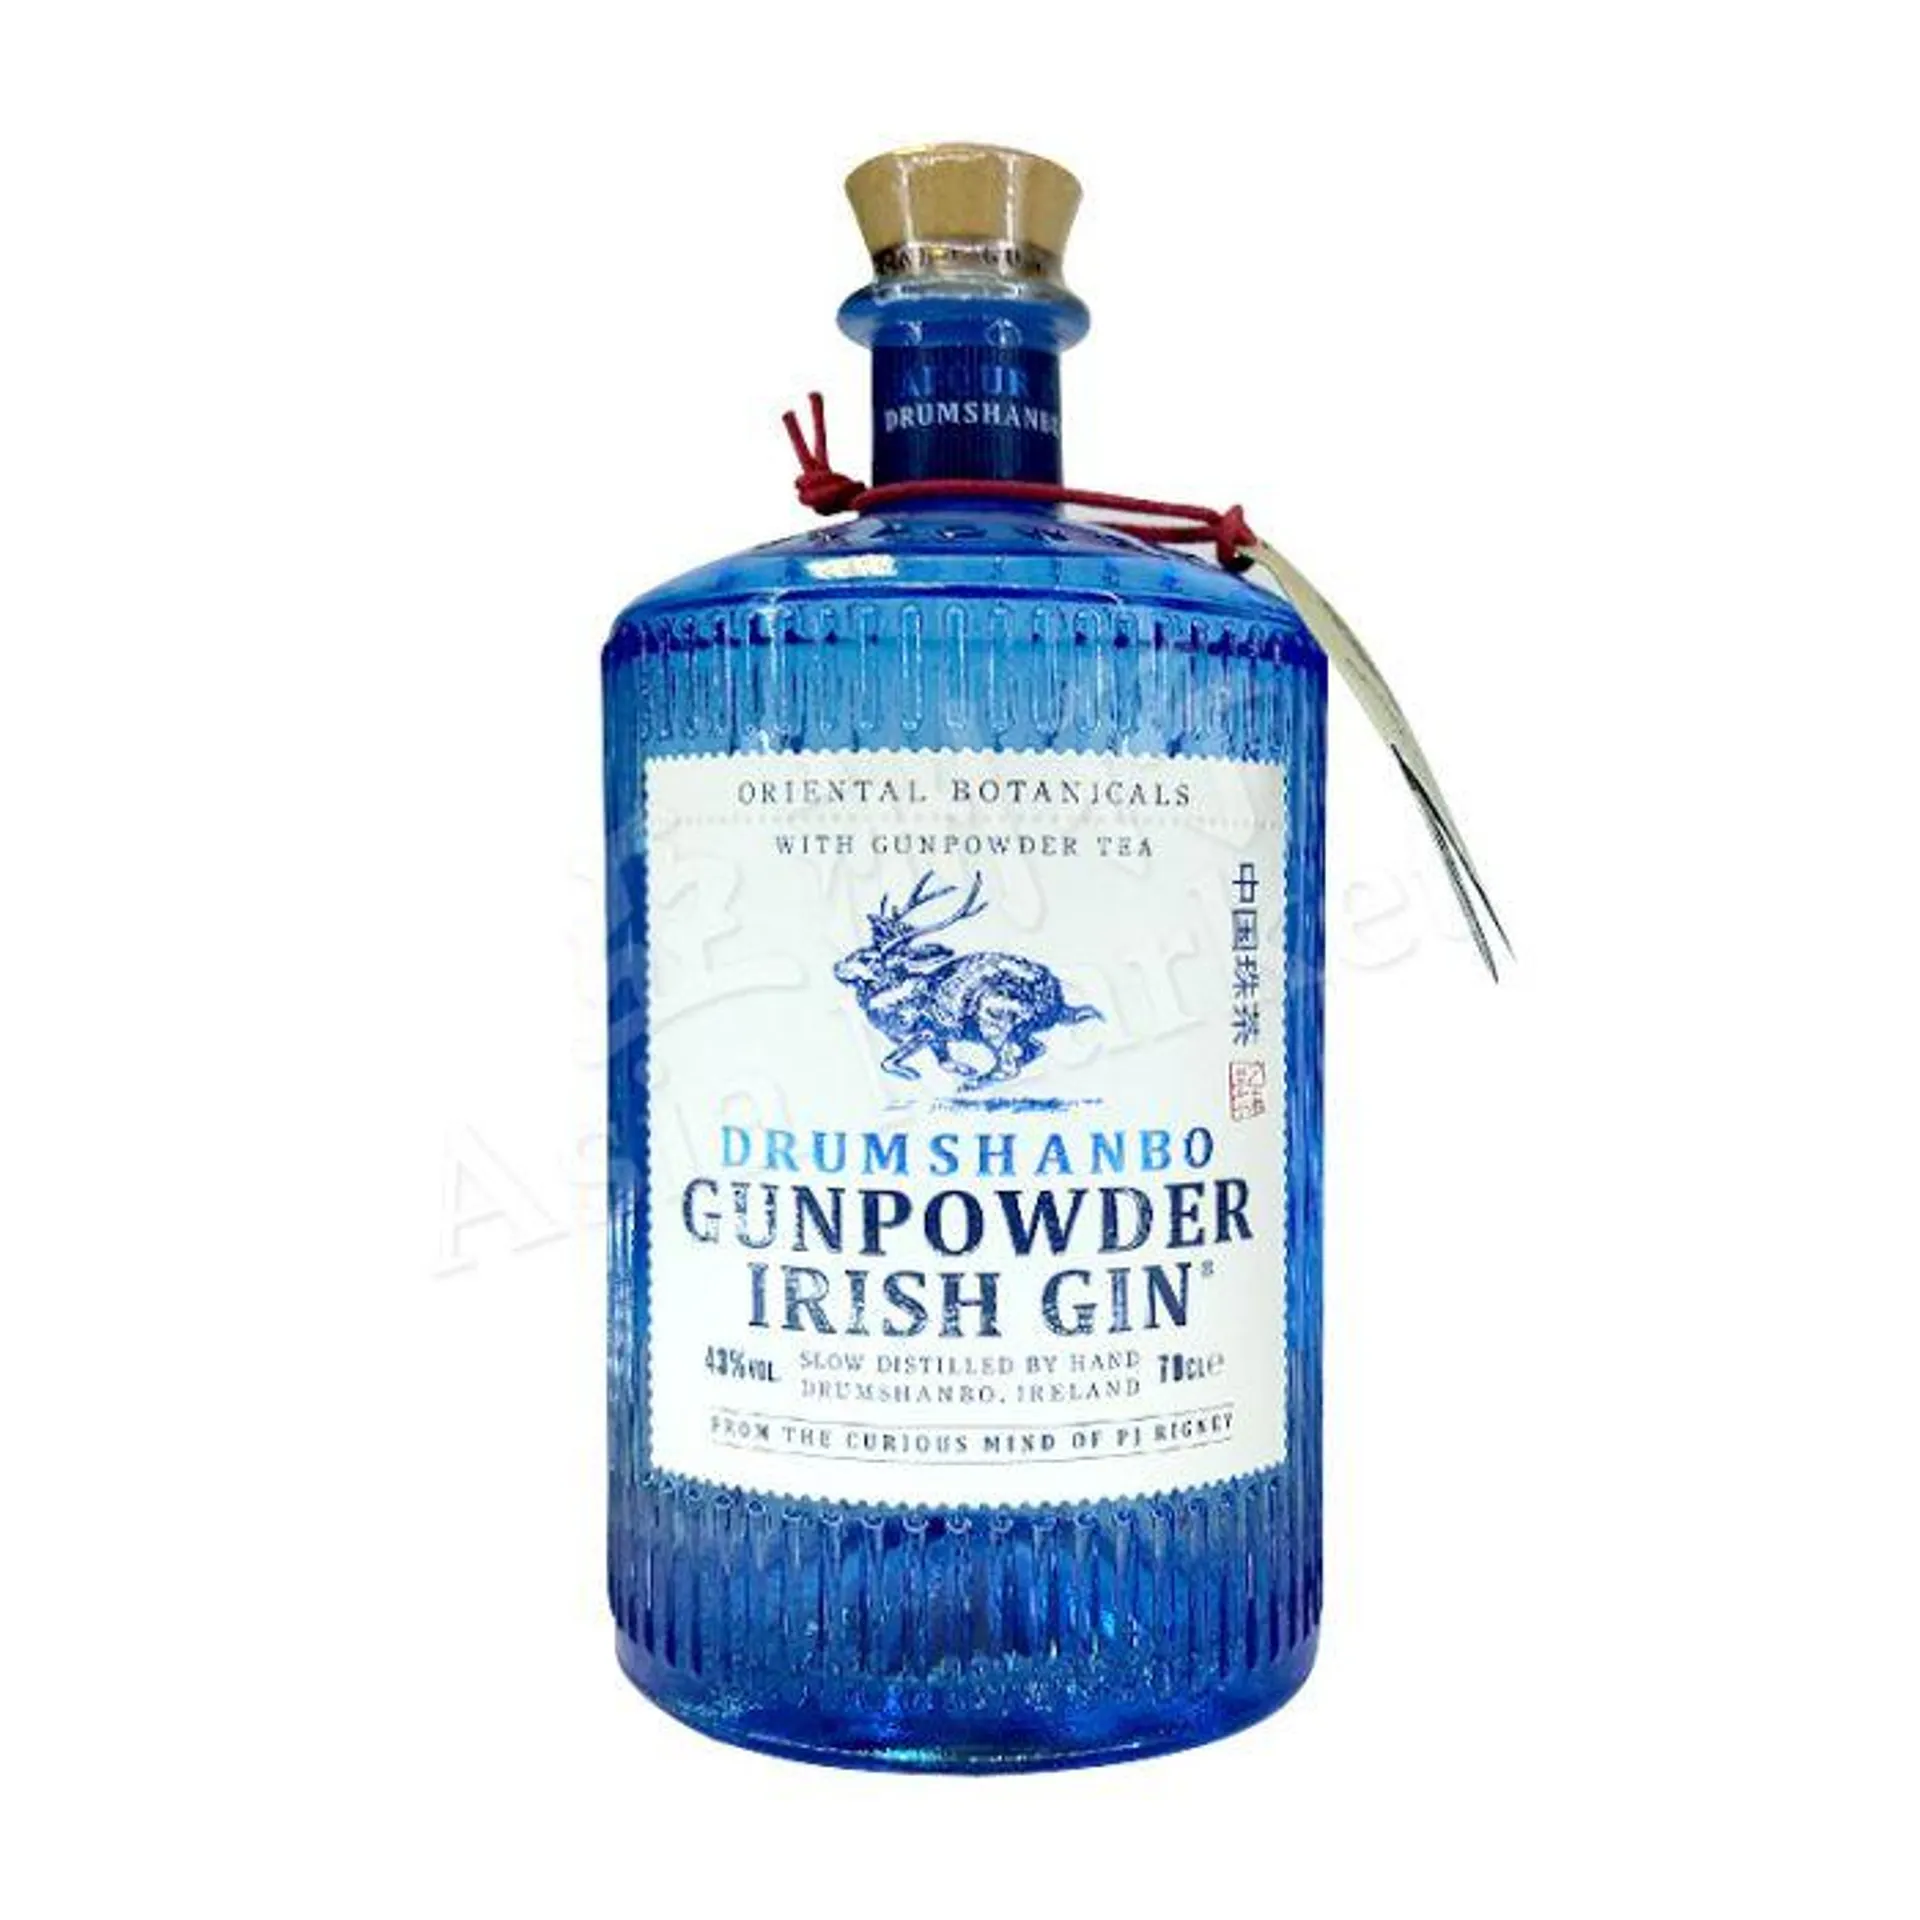 DRUMSHANBO - Gunpowder Irish Gin (Oriental Botanicals with Gunpowder Tea) (Alc. 43%) 700ml